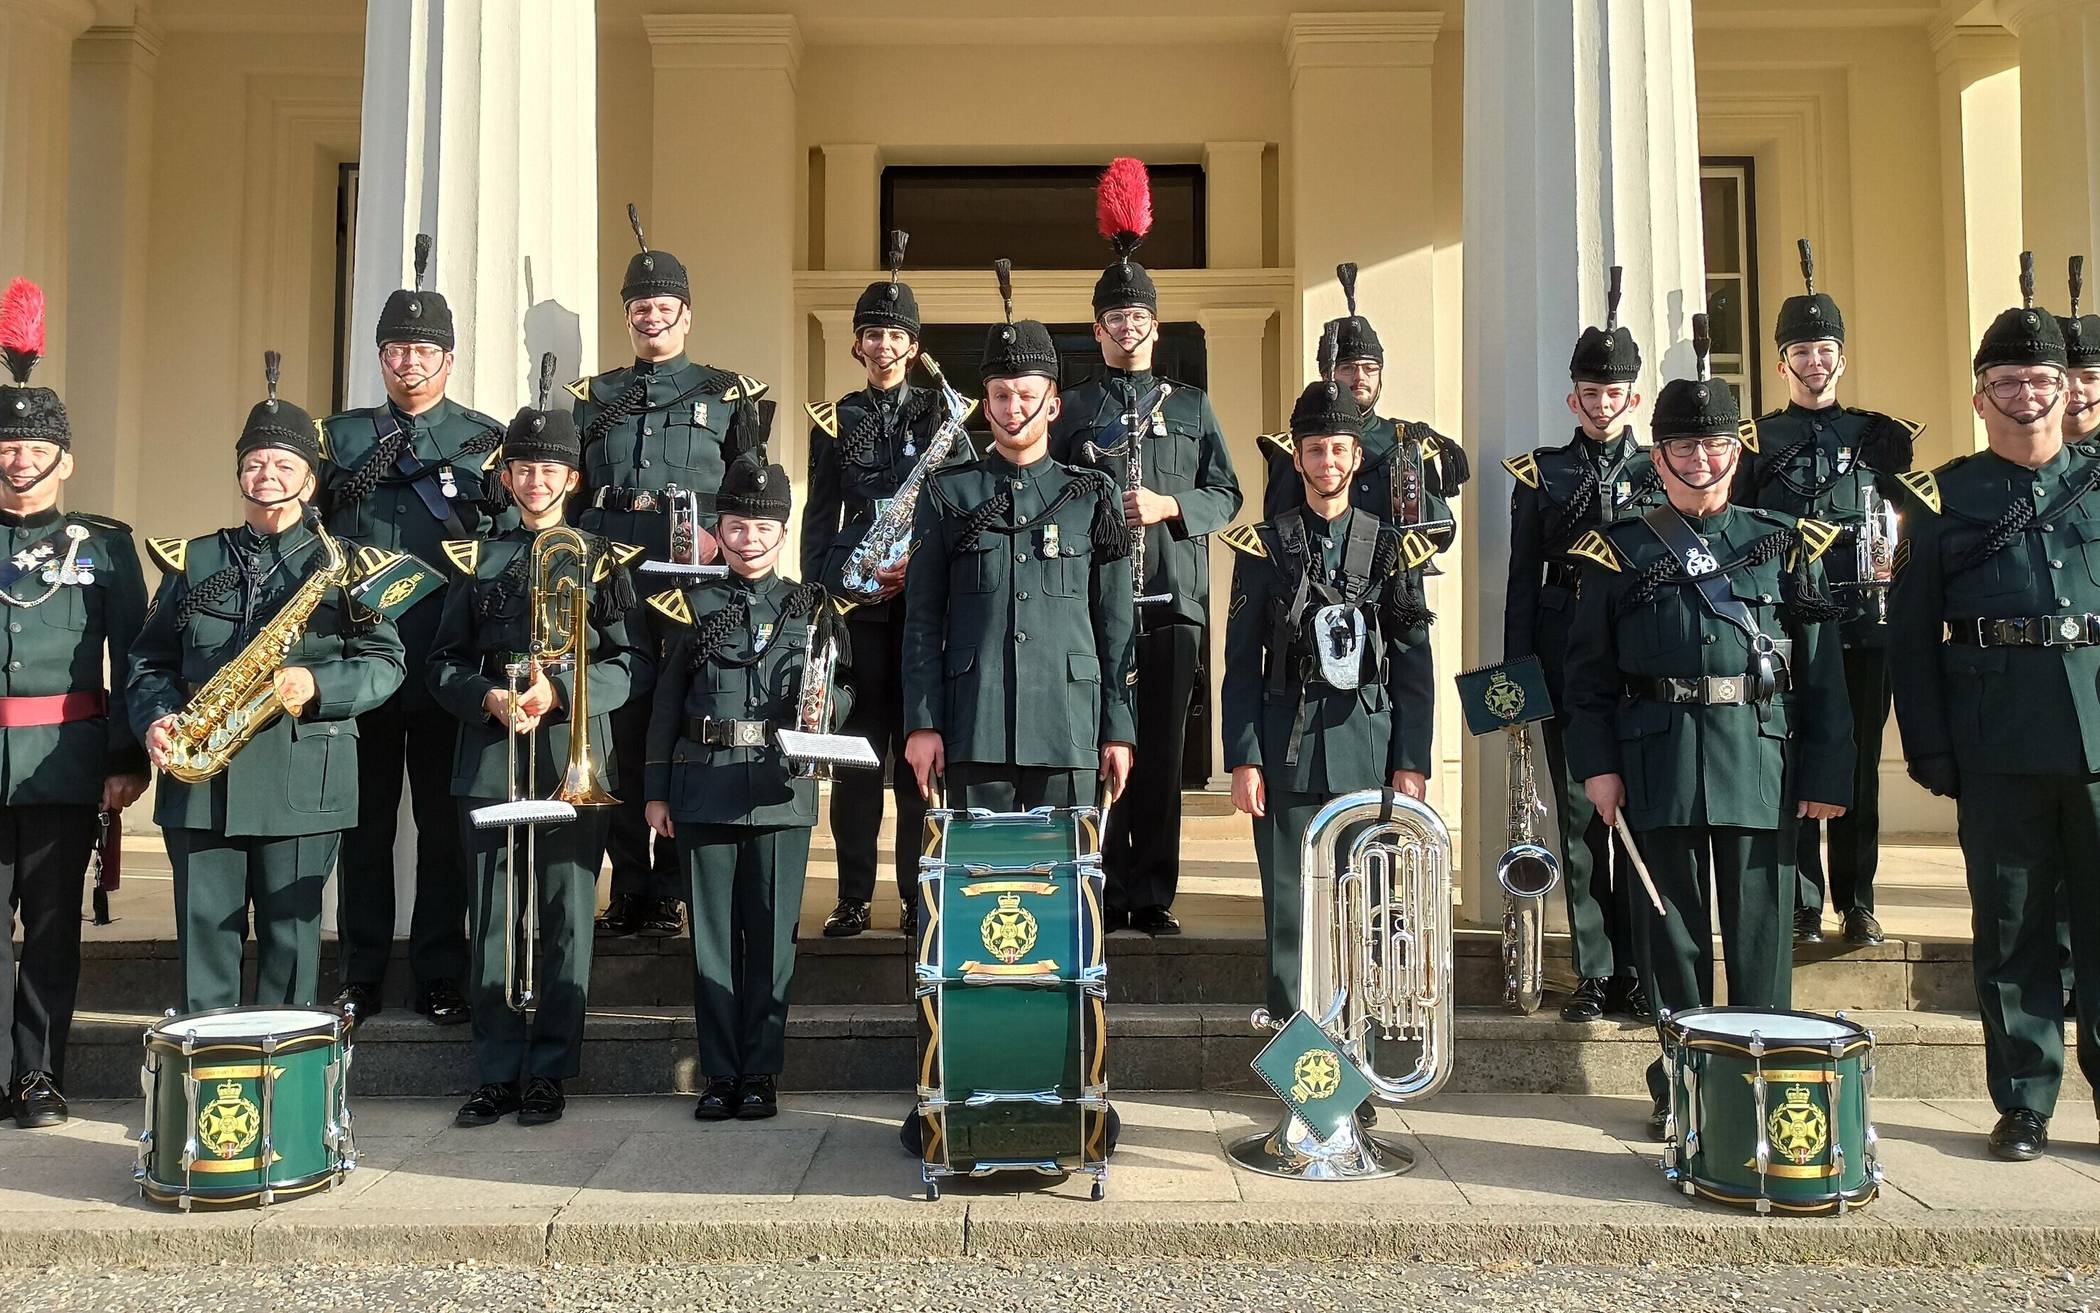  Die Neusser Marching-Band „Quirinus Band and Bugle Corps“ (QBBC) pflegt ihr britisch-zackiges Erscheinungsbild.  